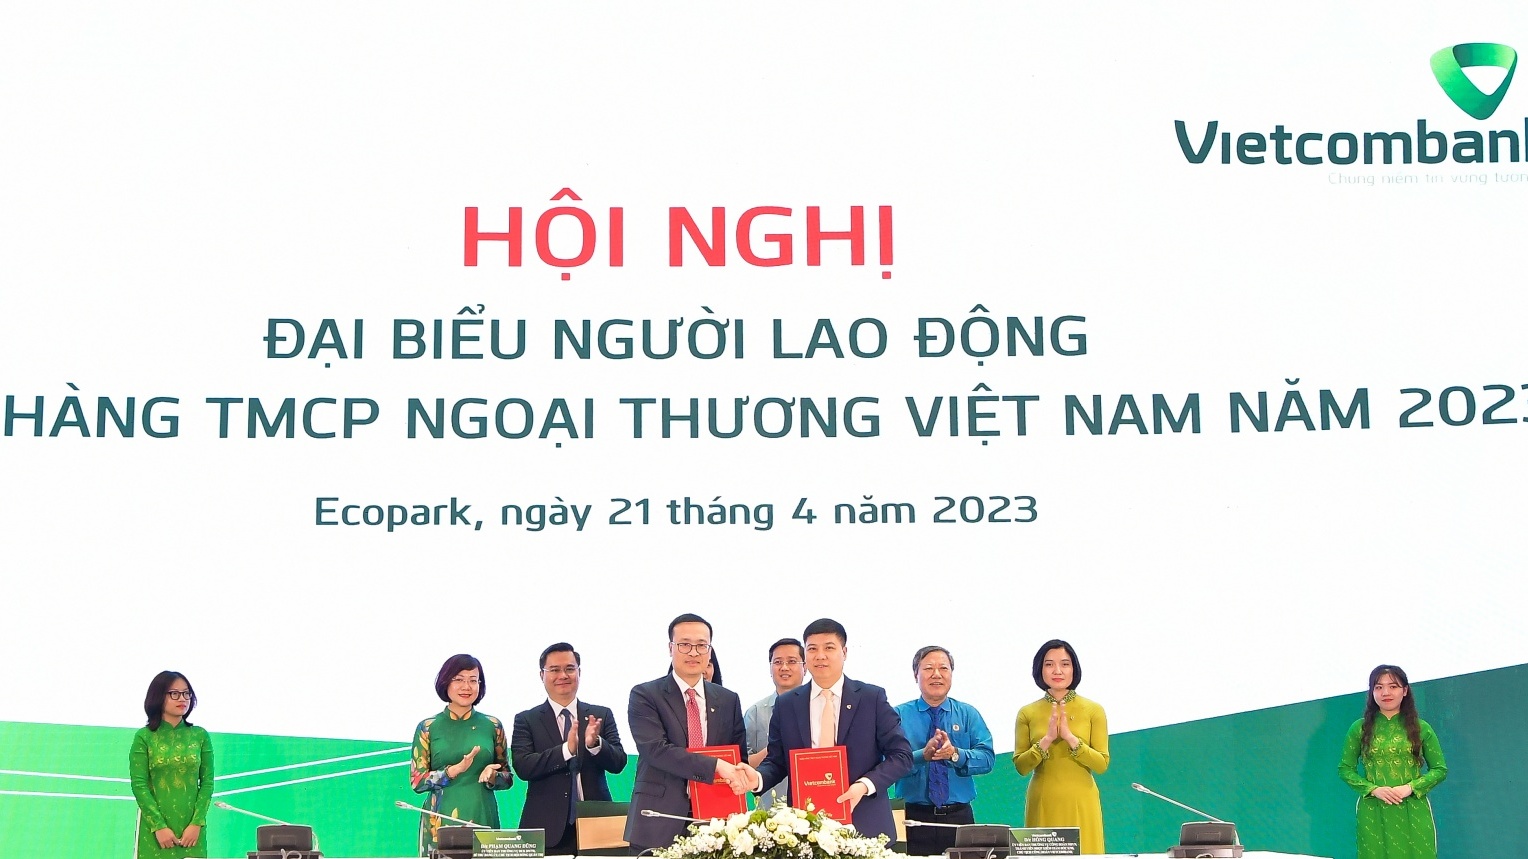 Công đoàn Vietcombank: Góp phần tạo dựng thương hiệu và phát triển văn hóa doanh nghiệp